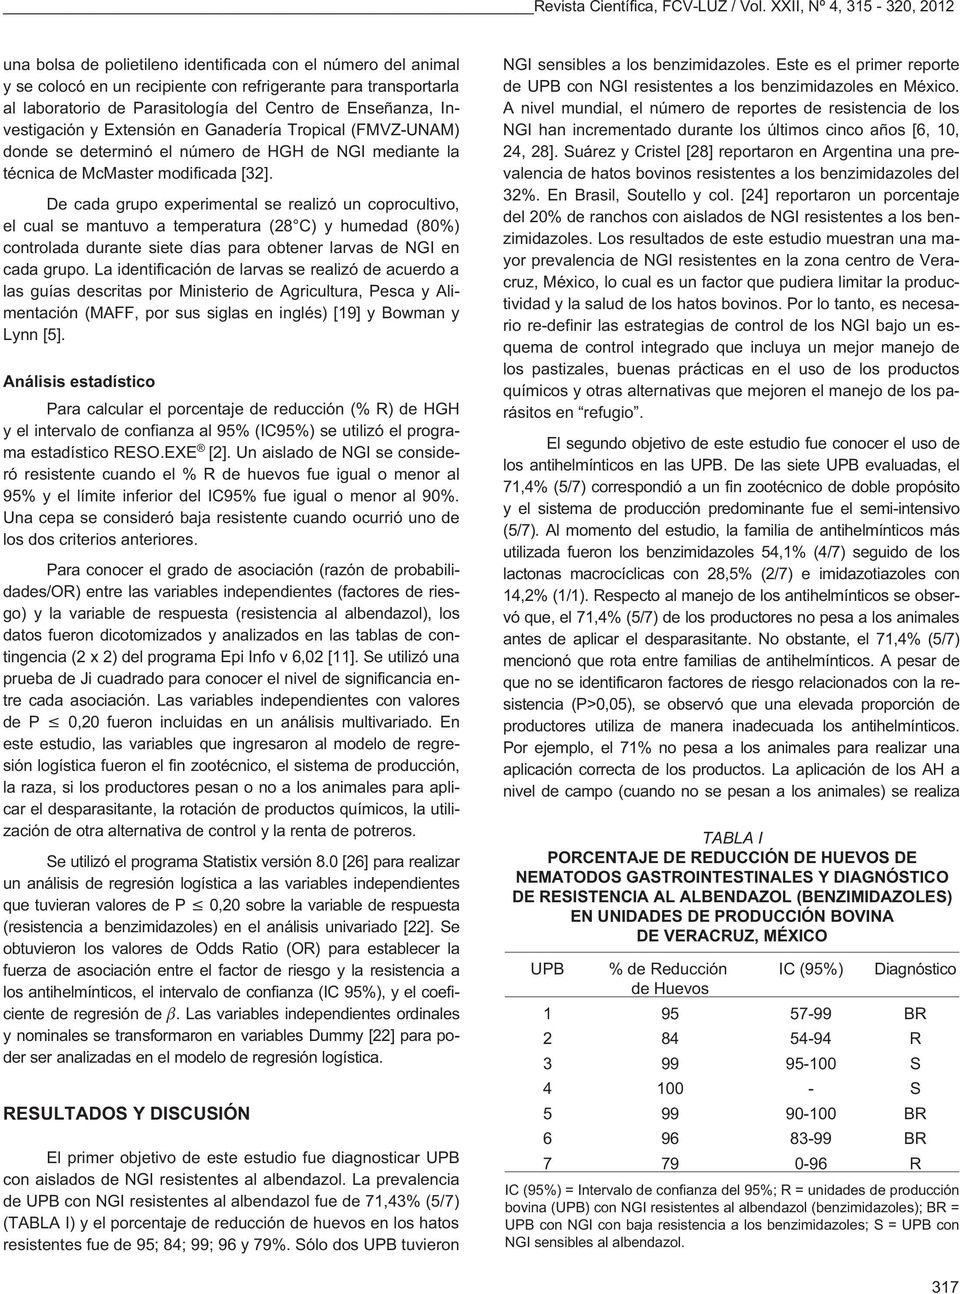 Enseñanza, Investigación y Extensión en Ganadería Tropical (FMVZ-UNAM) donde se determinó el número de HGH de NGI mediante la técnica de McMaster modificada [32].